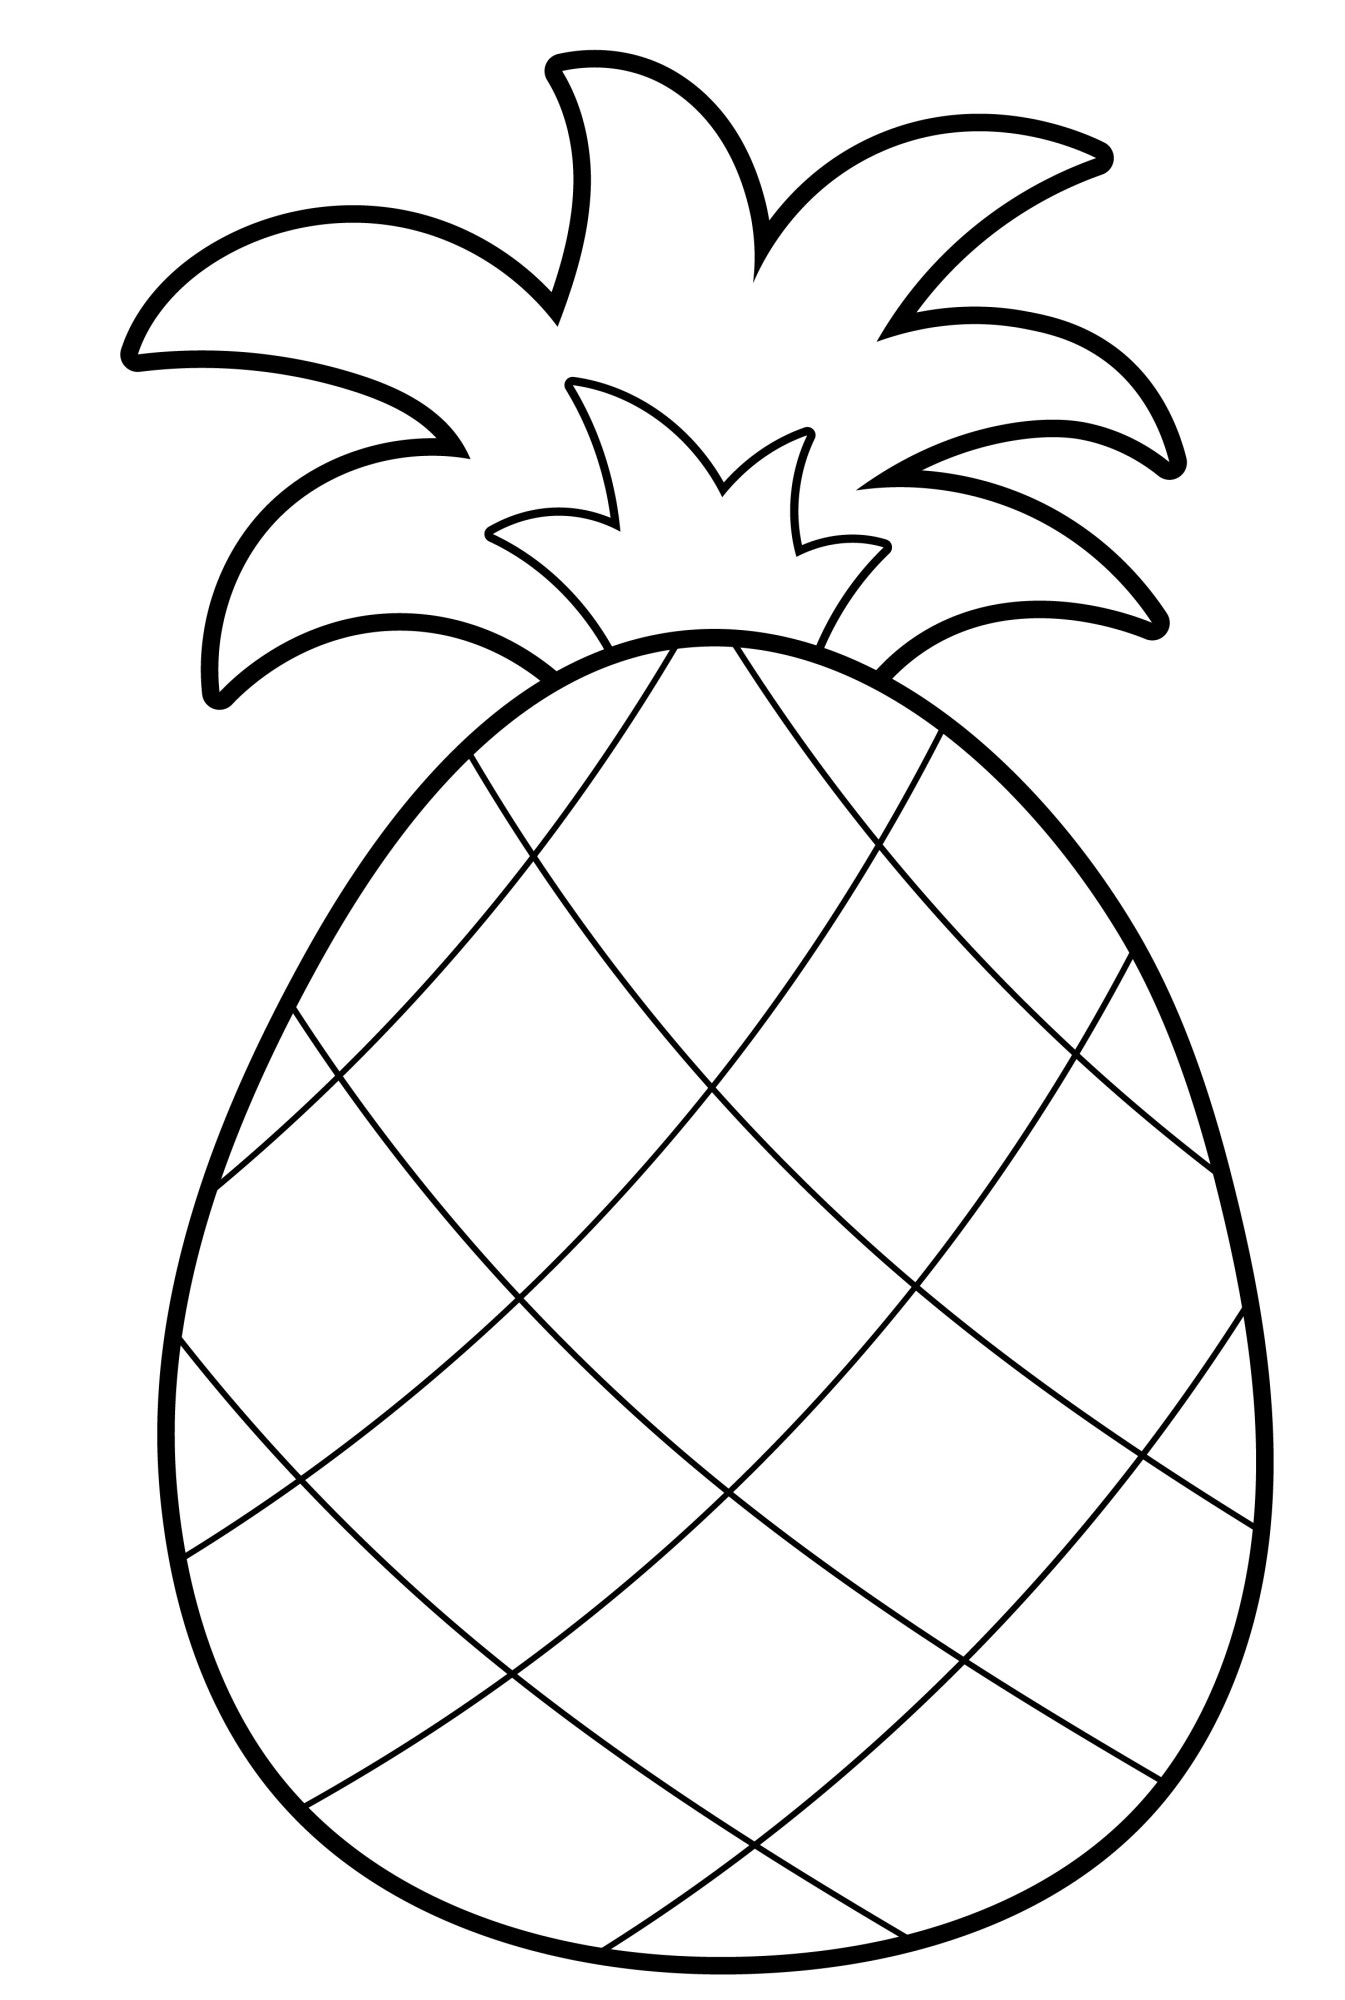 Раскраска для детей: освежающий ананас